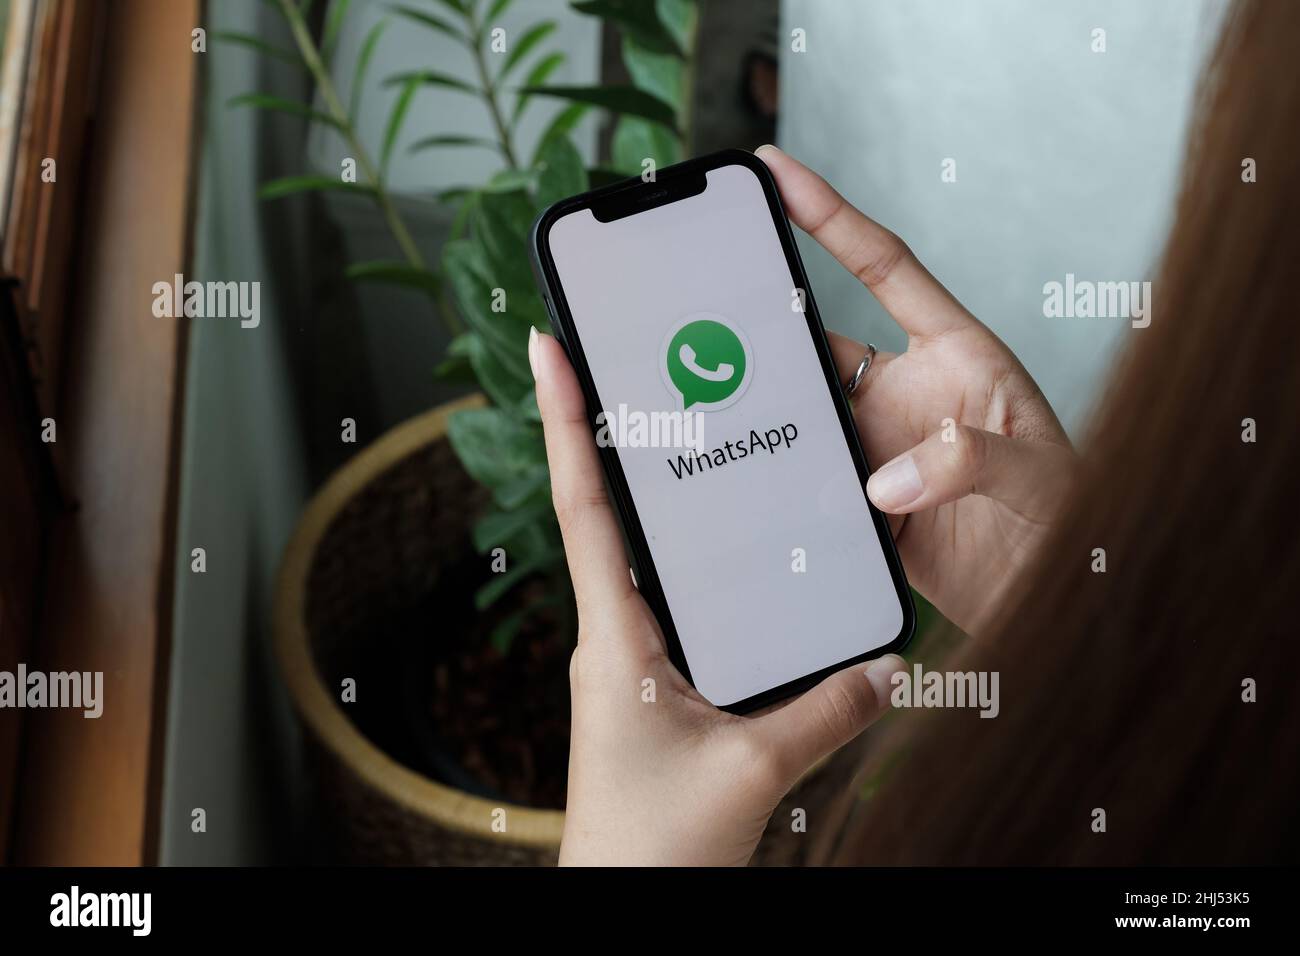 CHIANG MAI, THAILAND - 15. JAN 2022: Frau hält das iPhone 12 mit dem sozialen Netzwerkdienst WhatsApp auf dem Bildschirm. Das iPhone wurde entwickelt und entwickelt Stockfoto